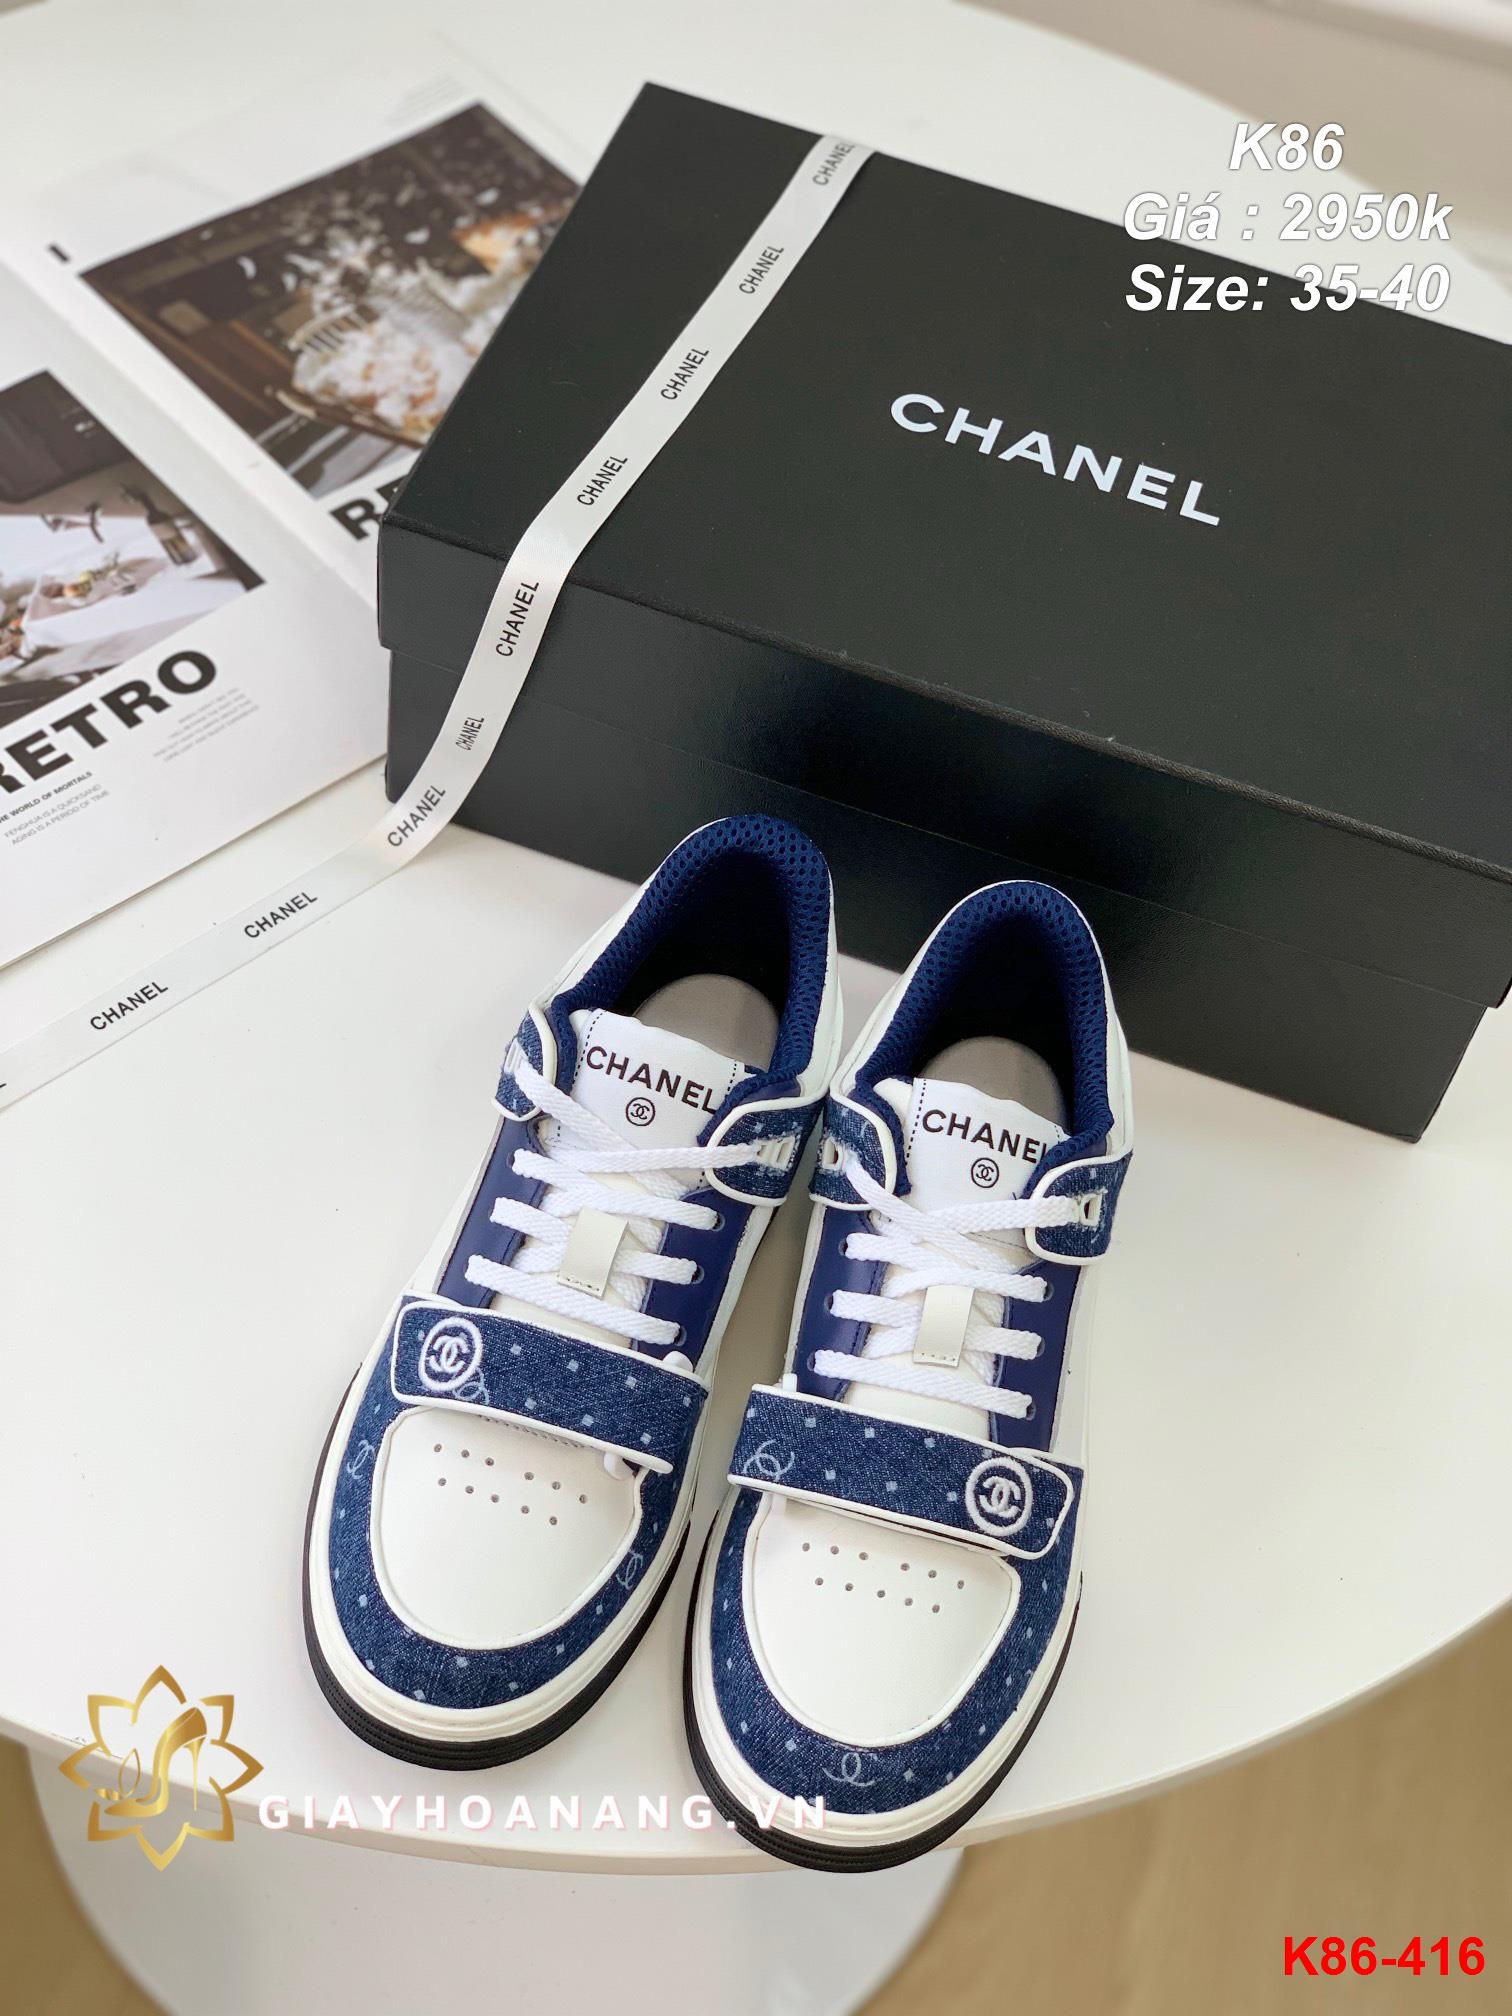 K86-416 Chanel giày thể thao siêu cấp